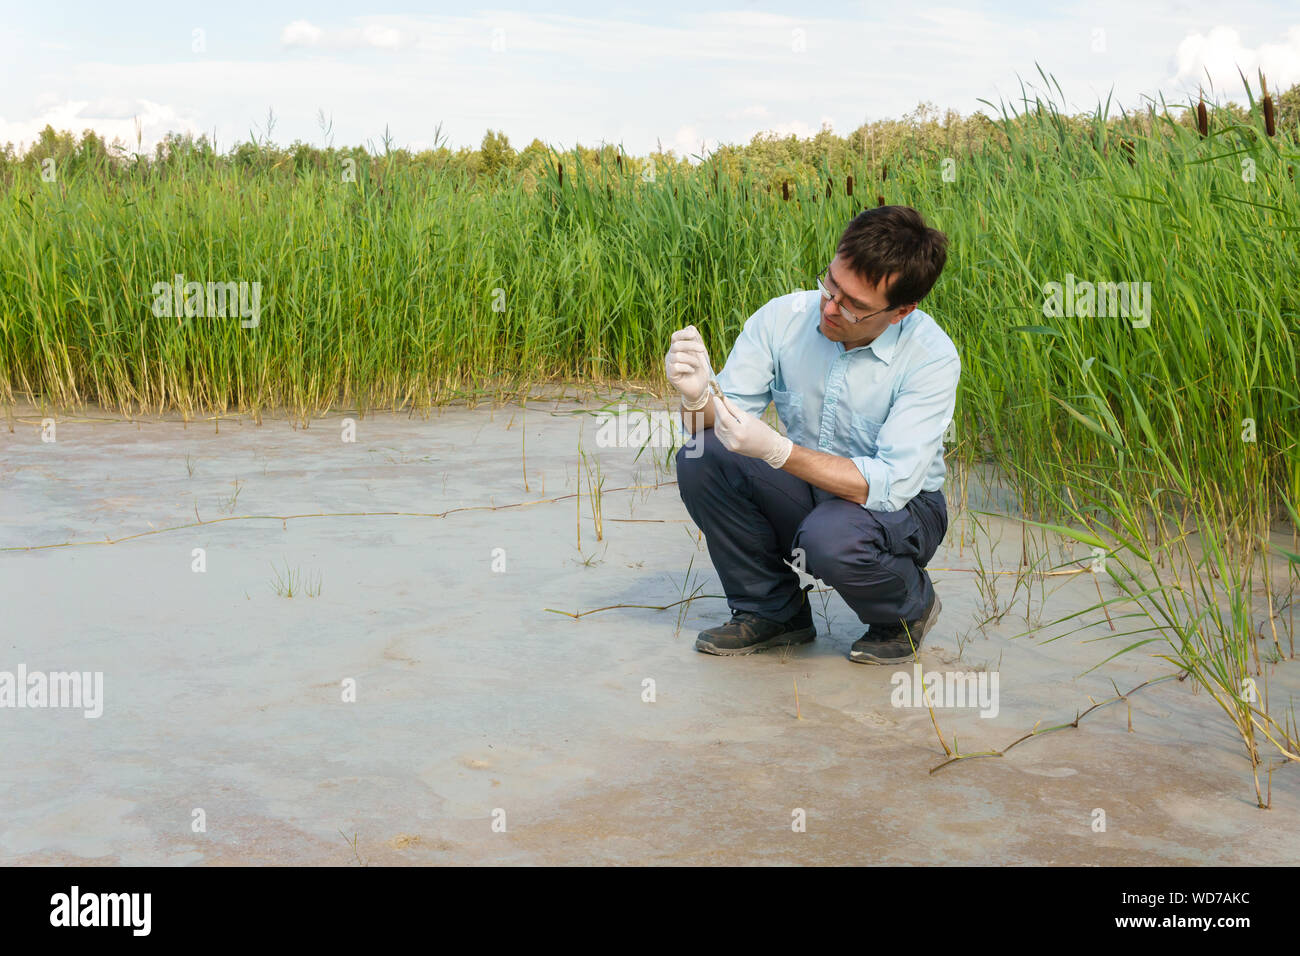 Campo biólogo investigador examina una muestra de suelo en un tubo de ensayo contra un pantano seco Foto de stock